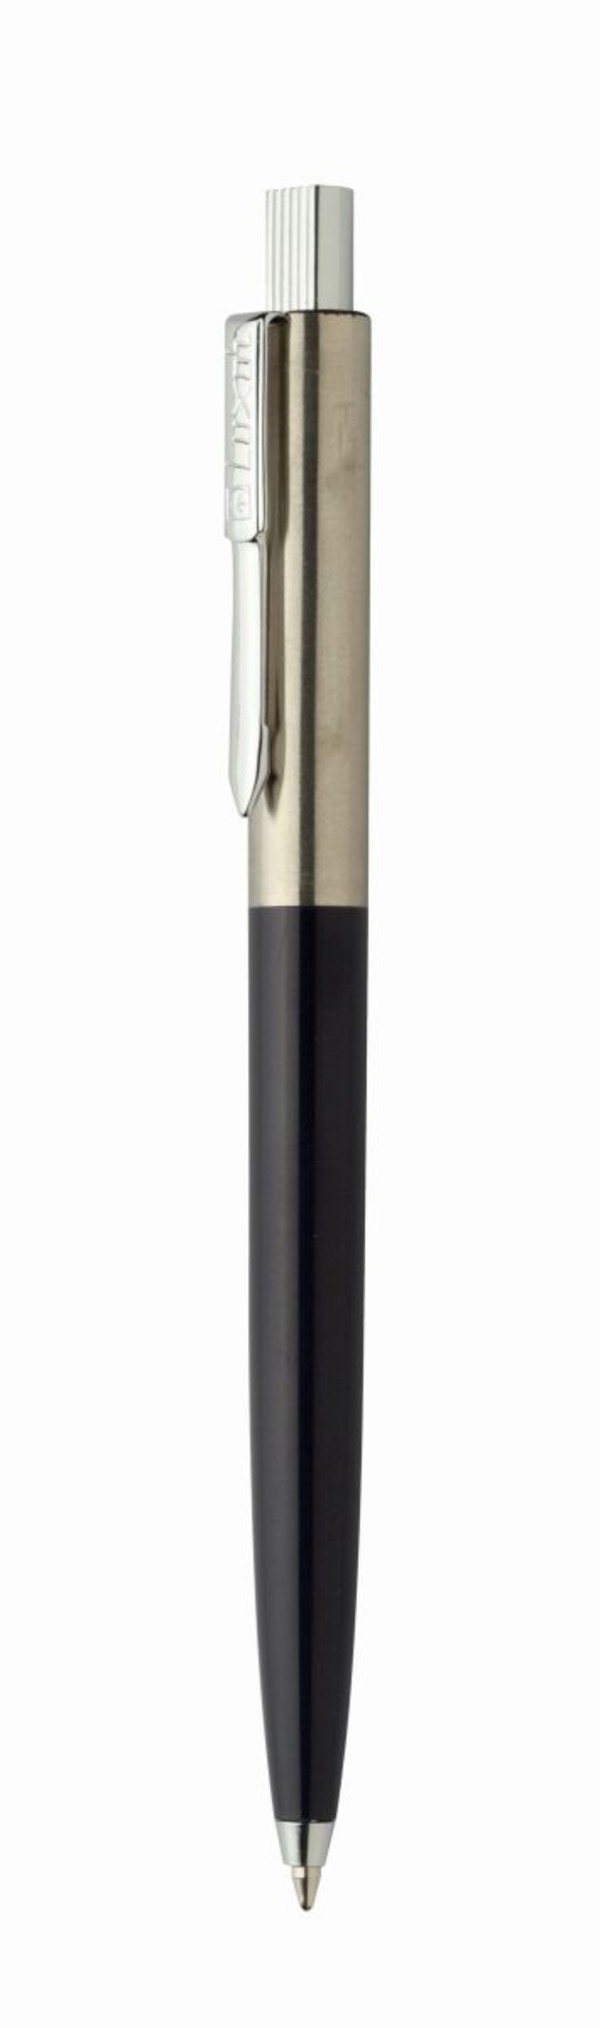 Długopis metalowy neo star czarny chromowany luxor 10 szt.